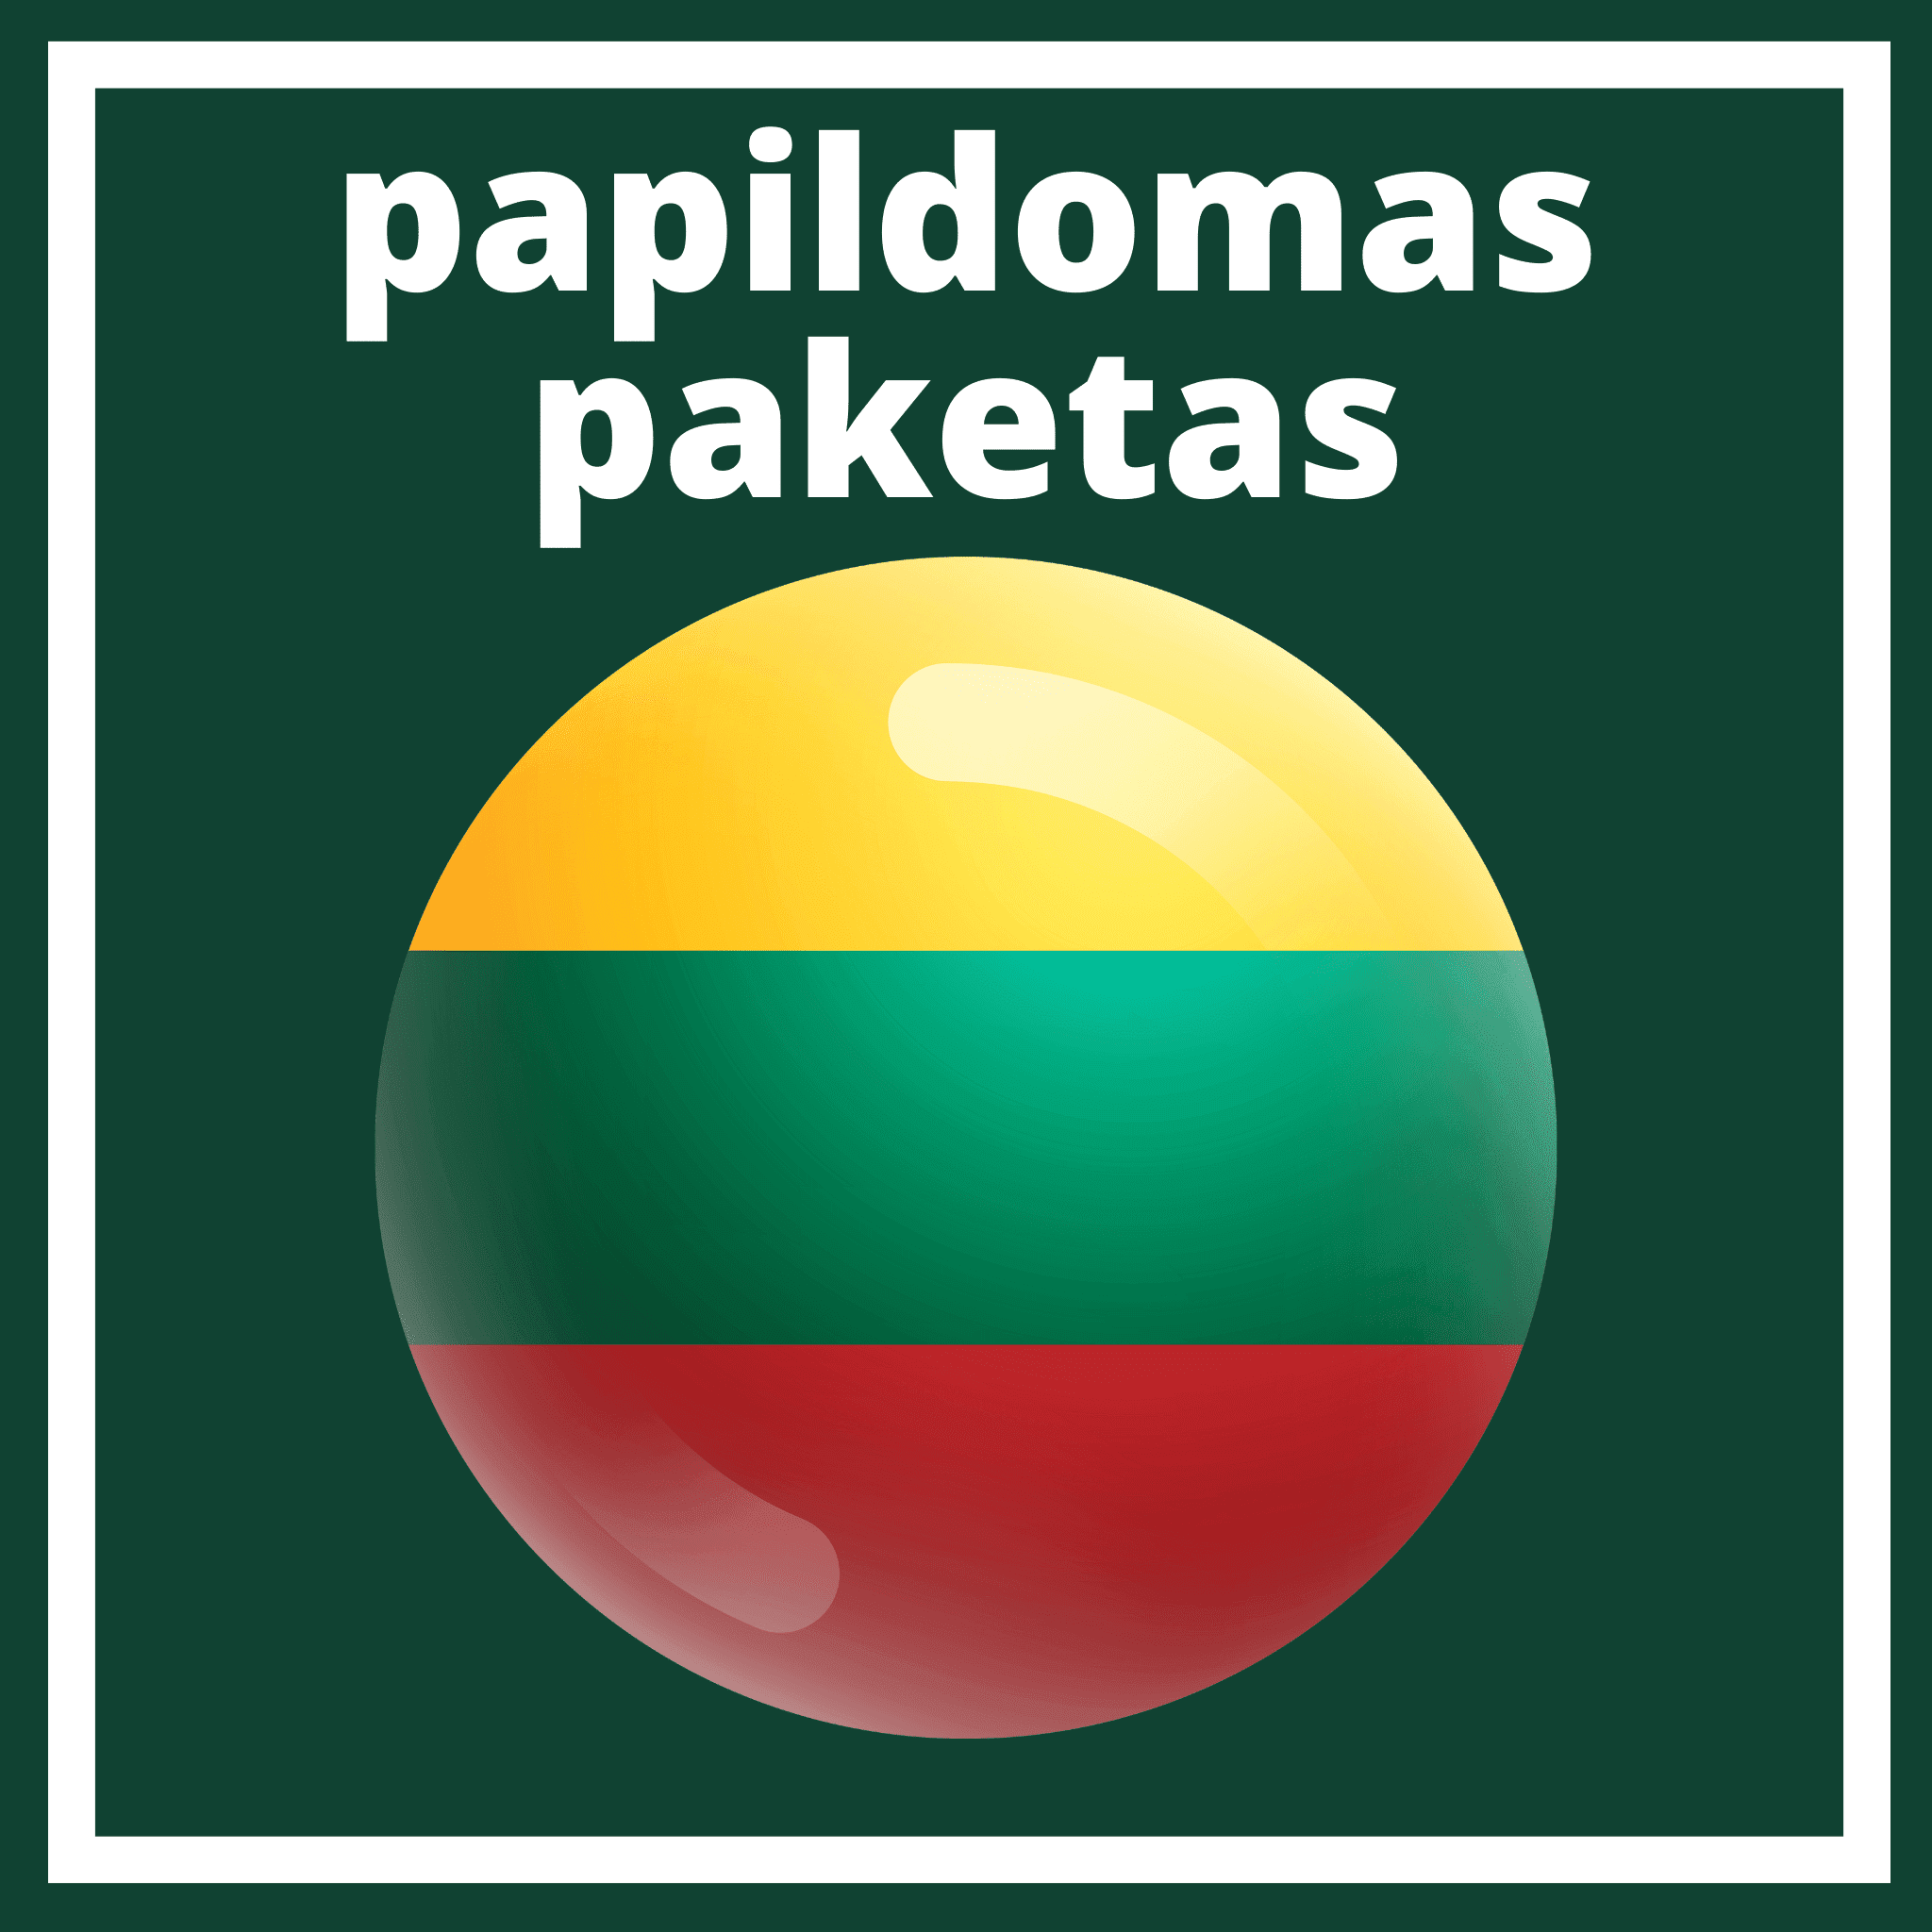 Paquete adicional Lituania